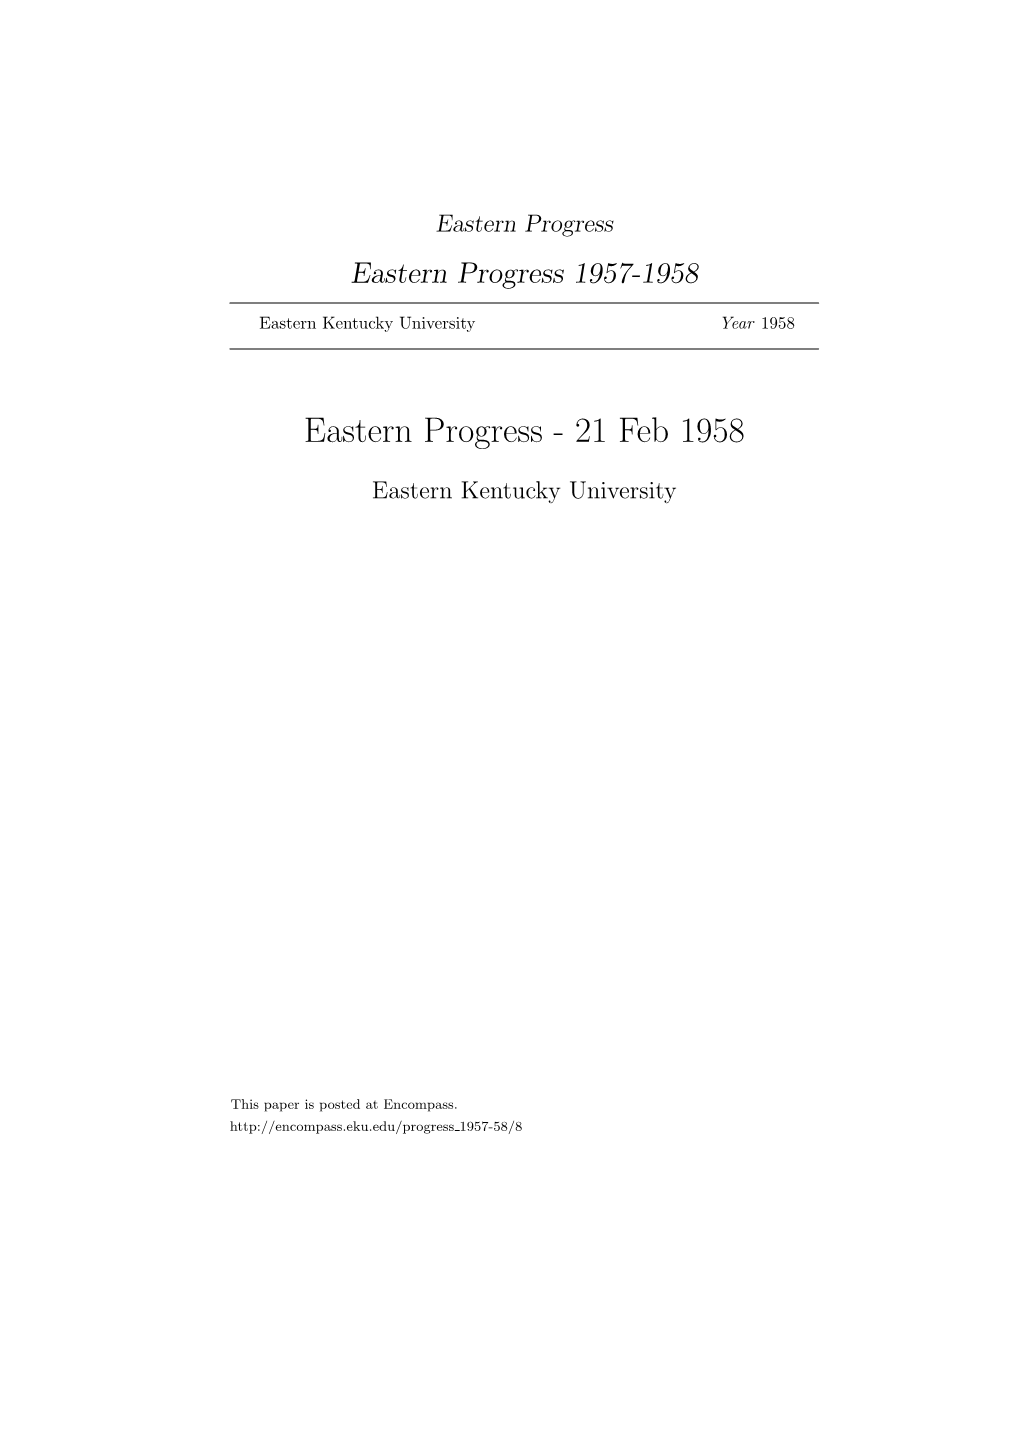 Eastern Progress Eastern Progress 1957-1958